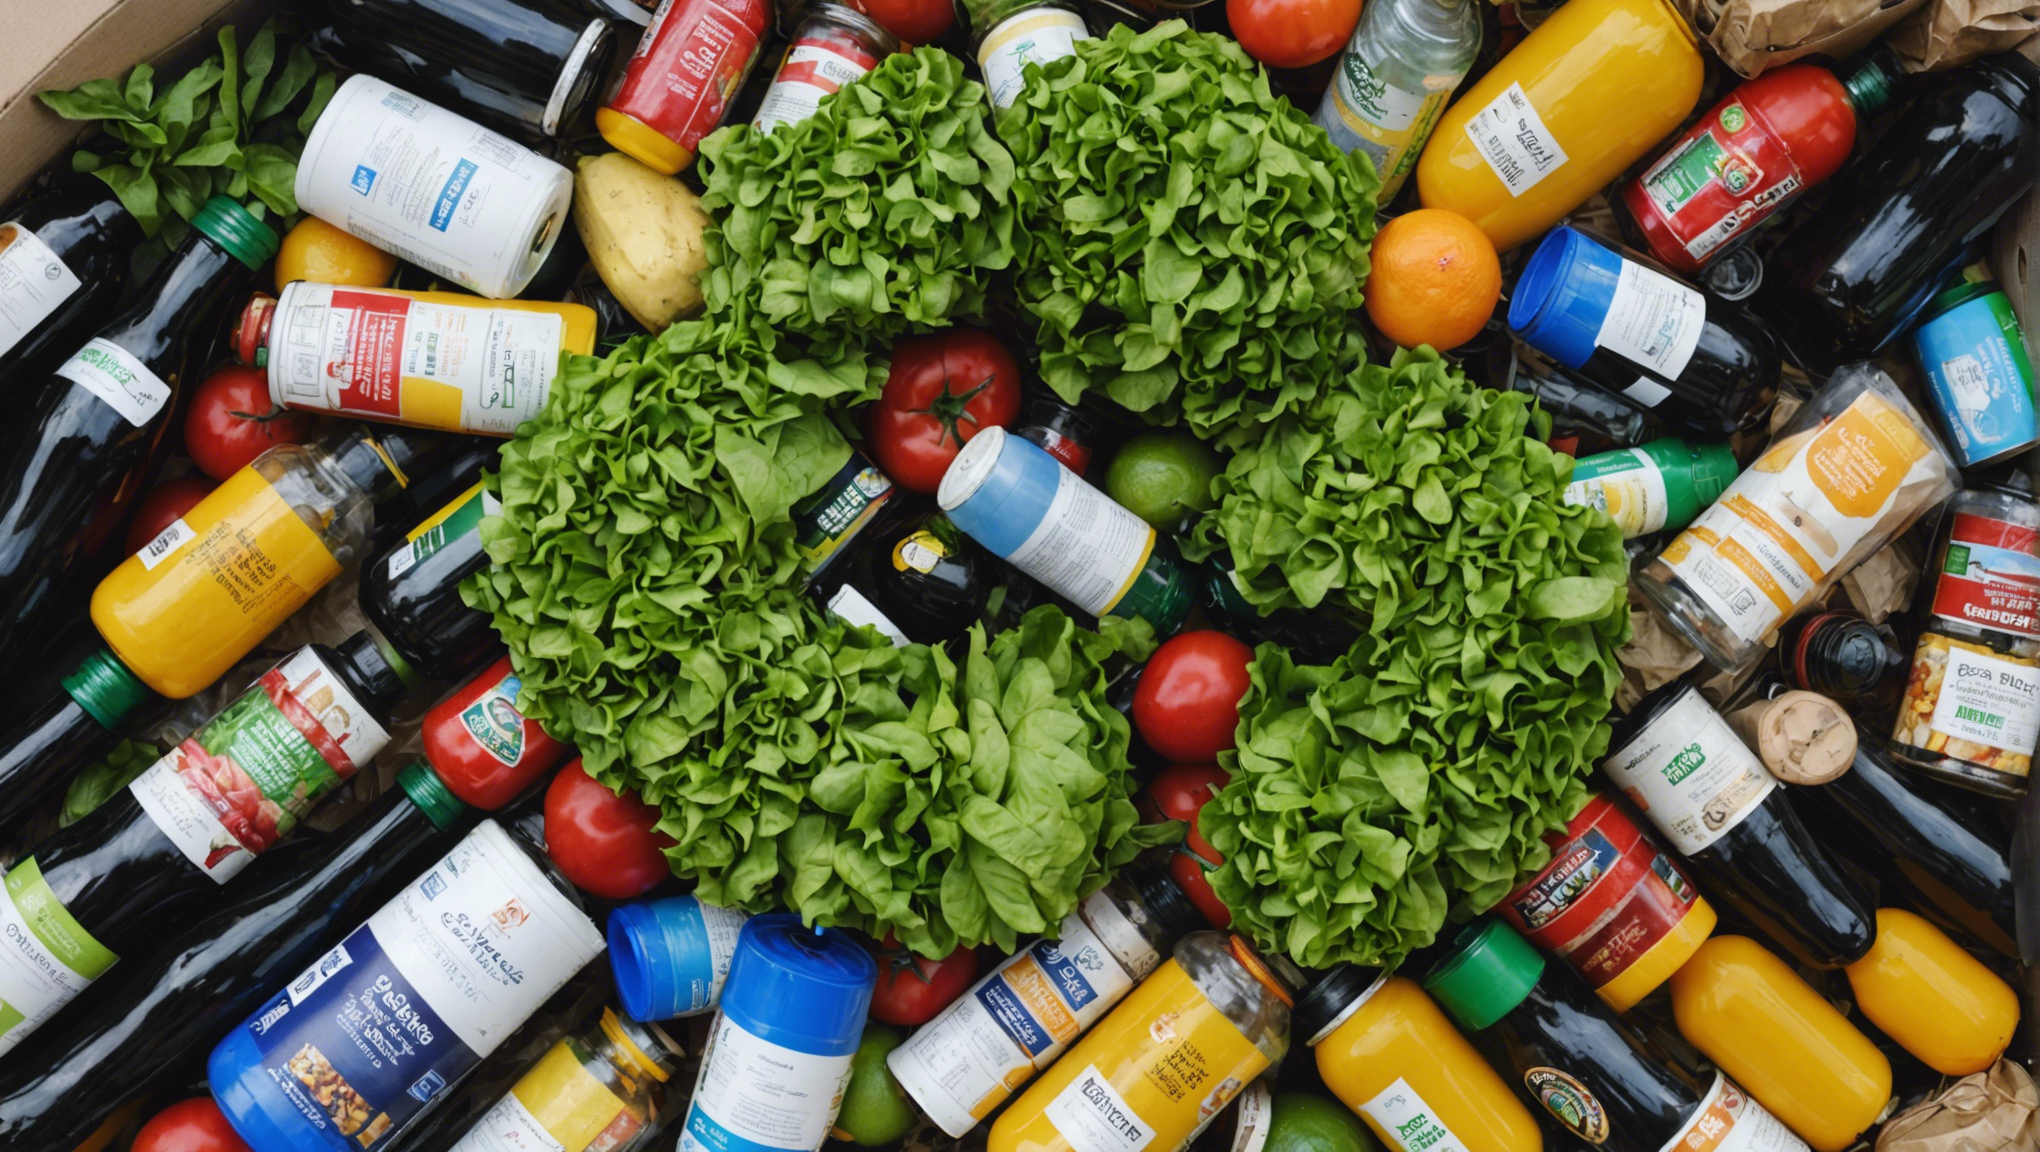 découvrez comment réinventer la gestion des déchets alimentaires et participer à une révolution écologique grâce à nos solutions innovantes de recyclage alimentaire.